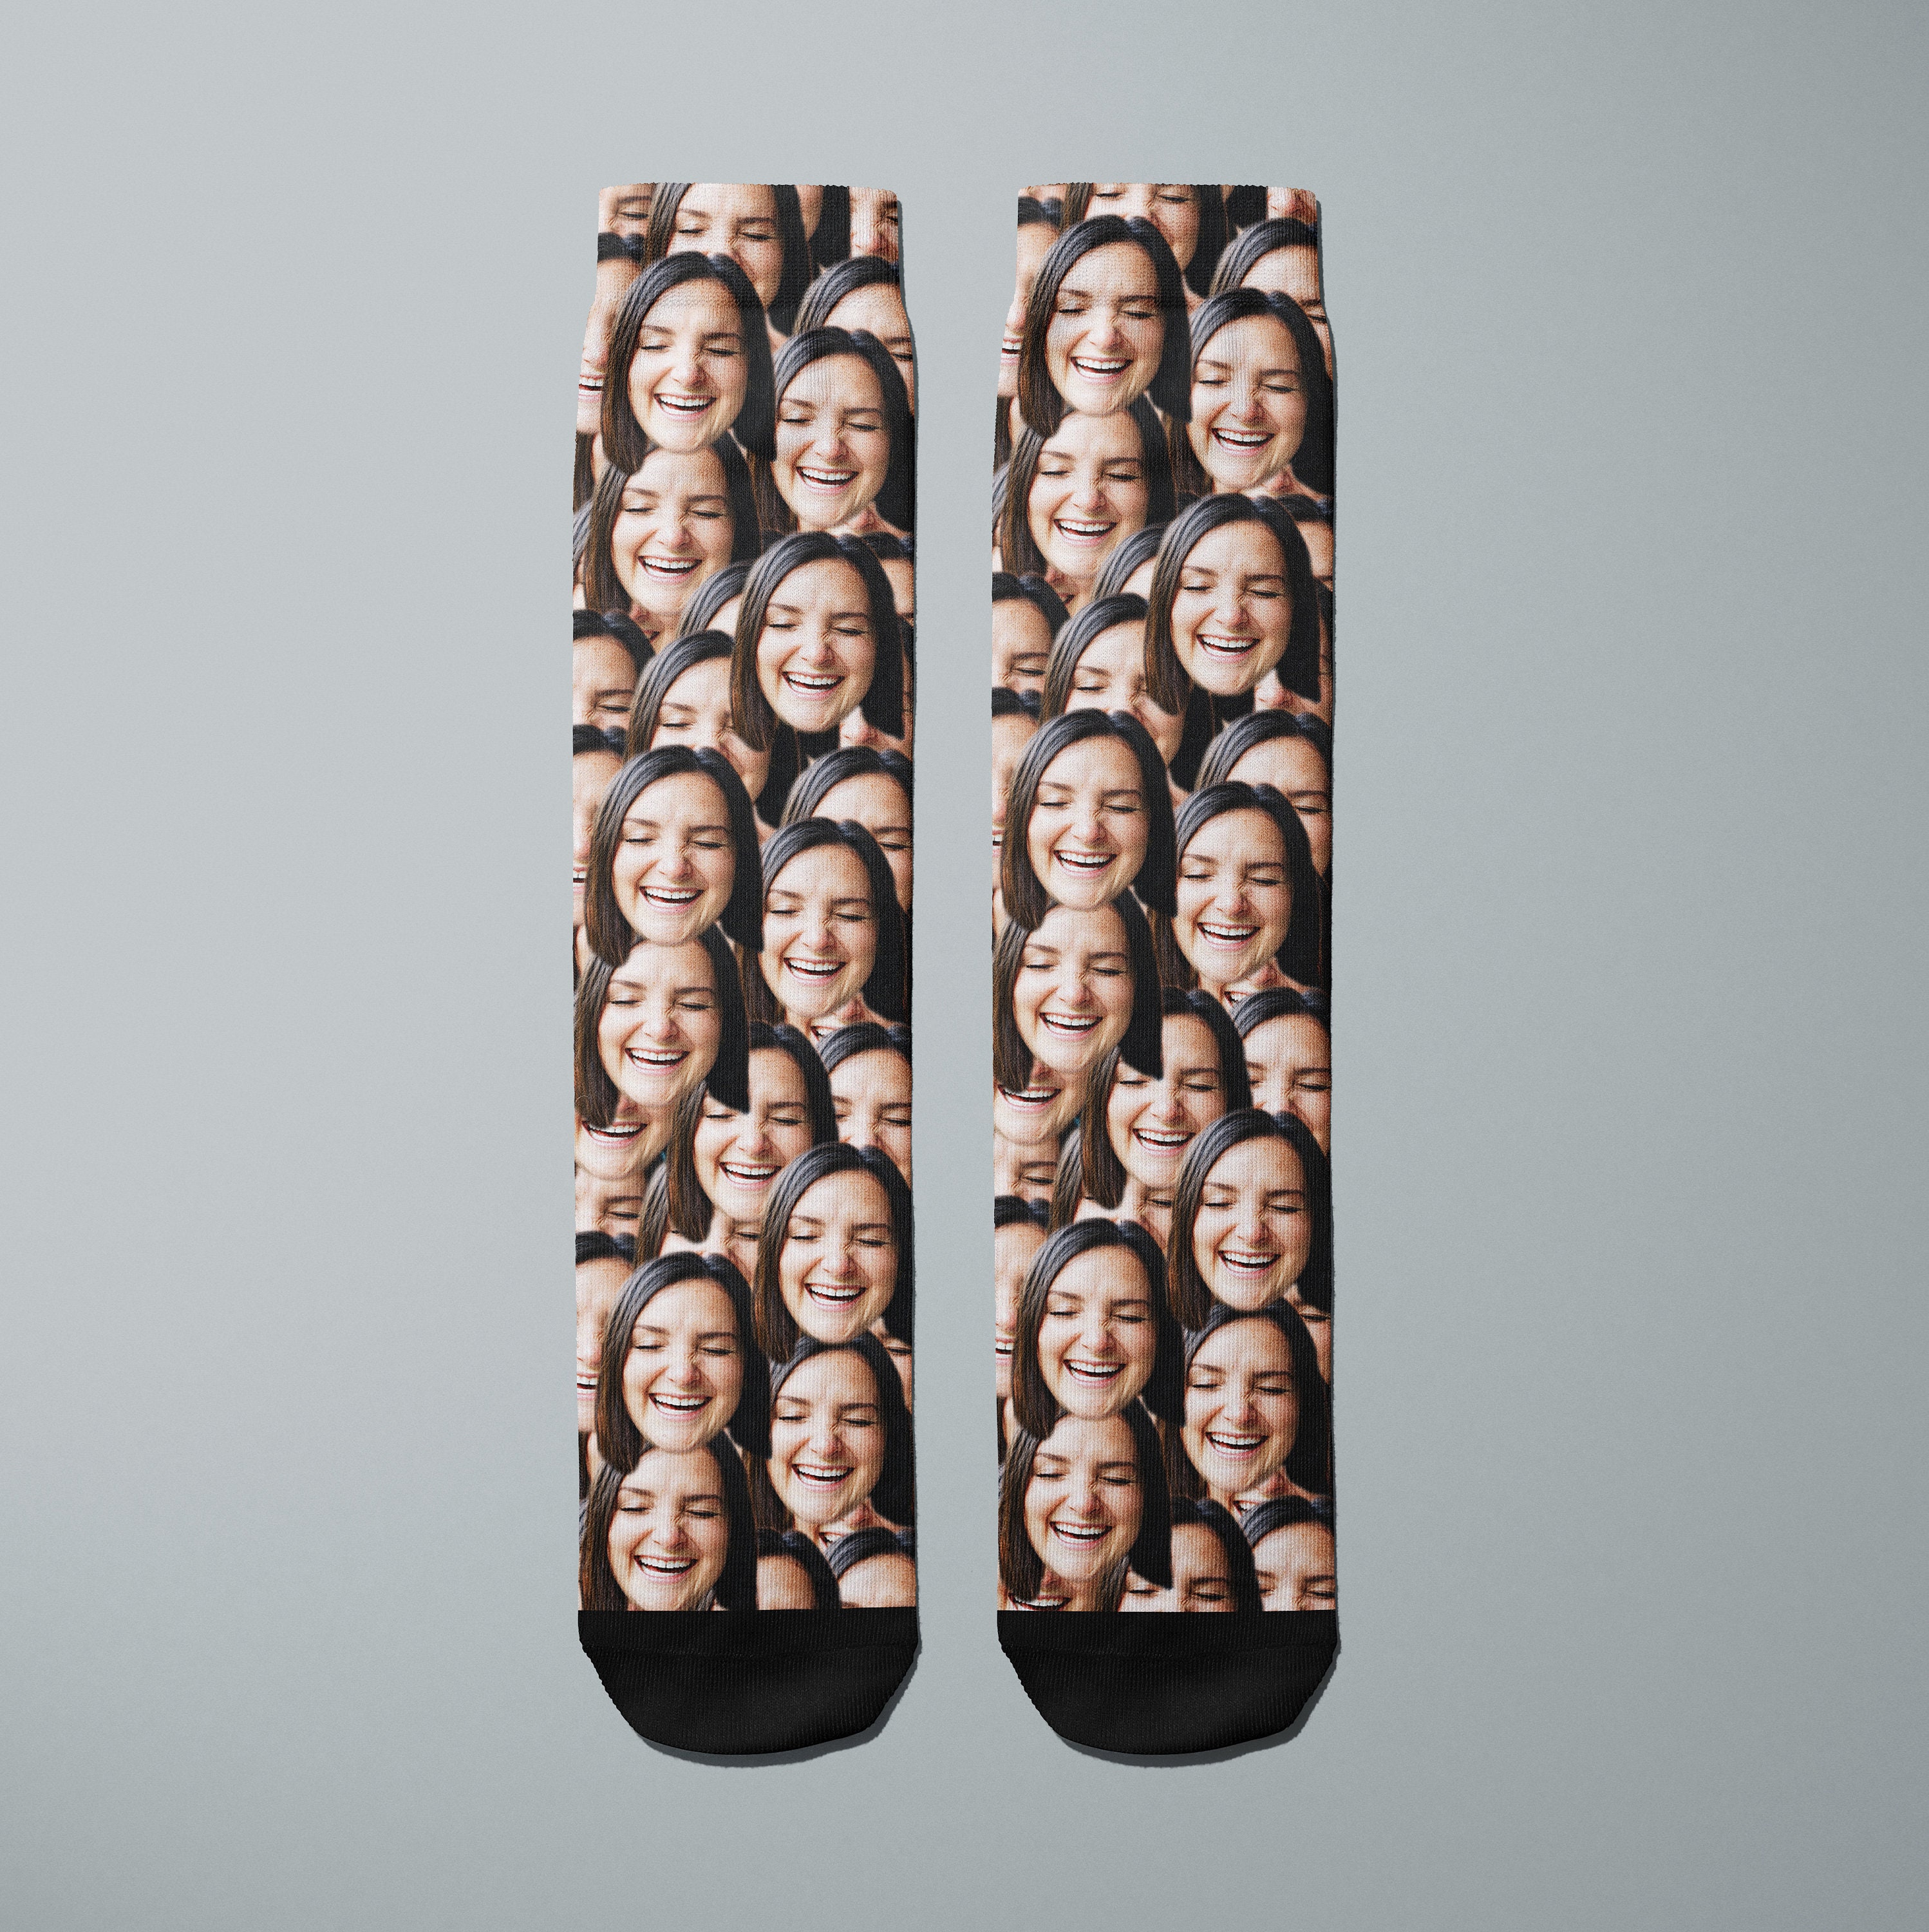 Customisable Printed Face Socks - All Over Socks, Custom Dog Socks. Cat Socks